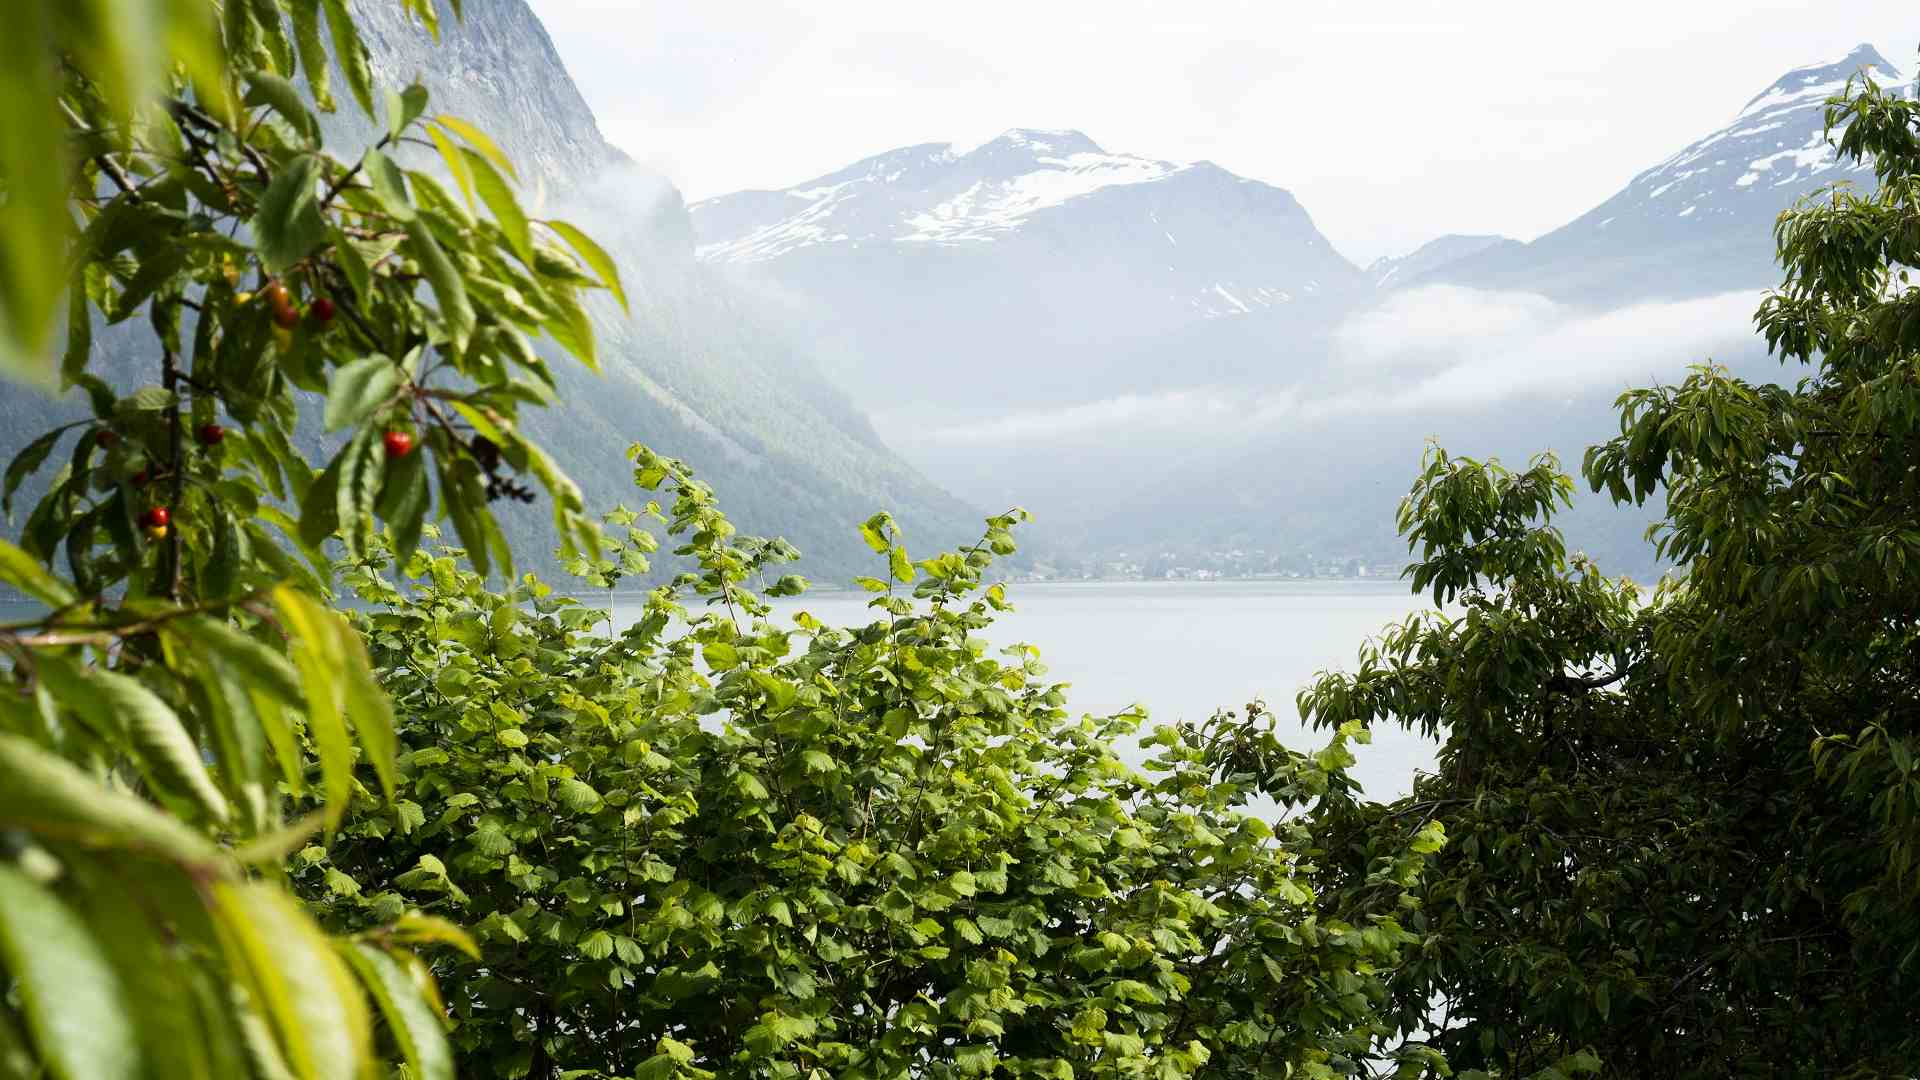 Utsikt mot Bispen fra Trollstigplatået på Trollstigen i Romsdalen.